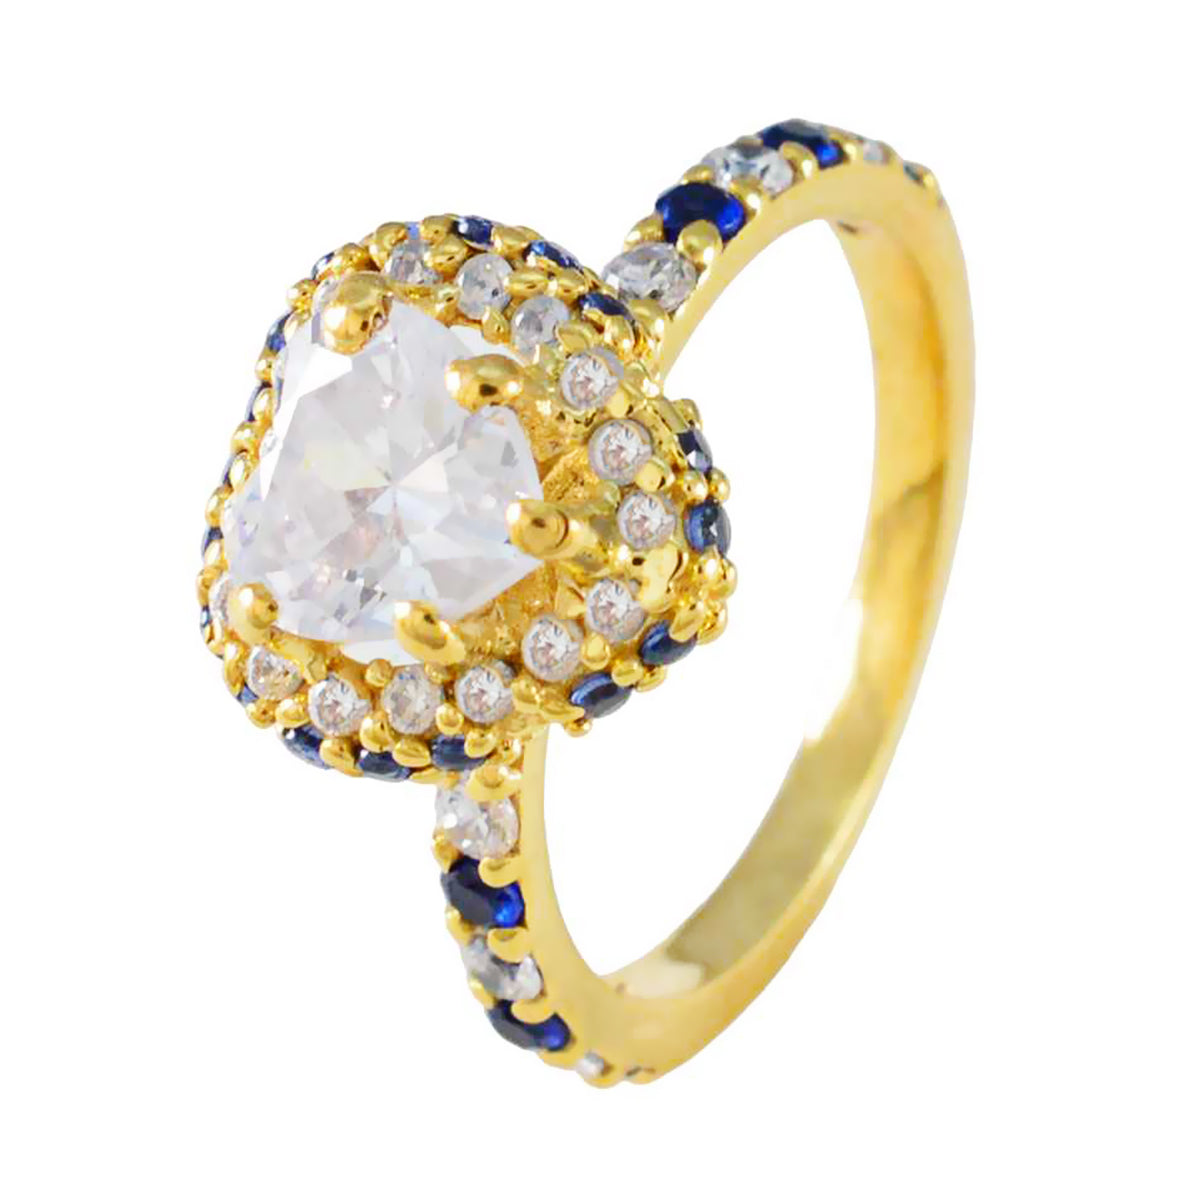 Ring aus reifem Riyo-Silber mit gelber Vergoldung, blauer Saphir, CZ-Stein, herzförmige Krappenfassung, handgefertigter Schmuck, Jubiläumsring